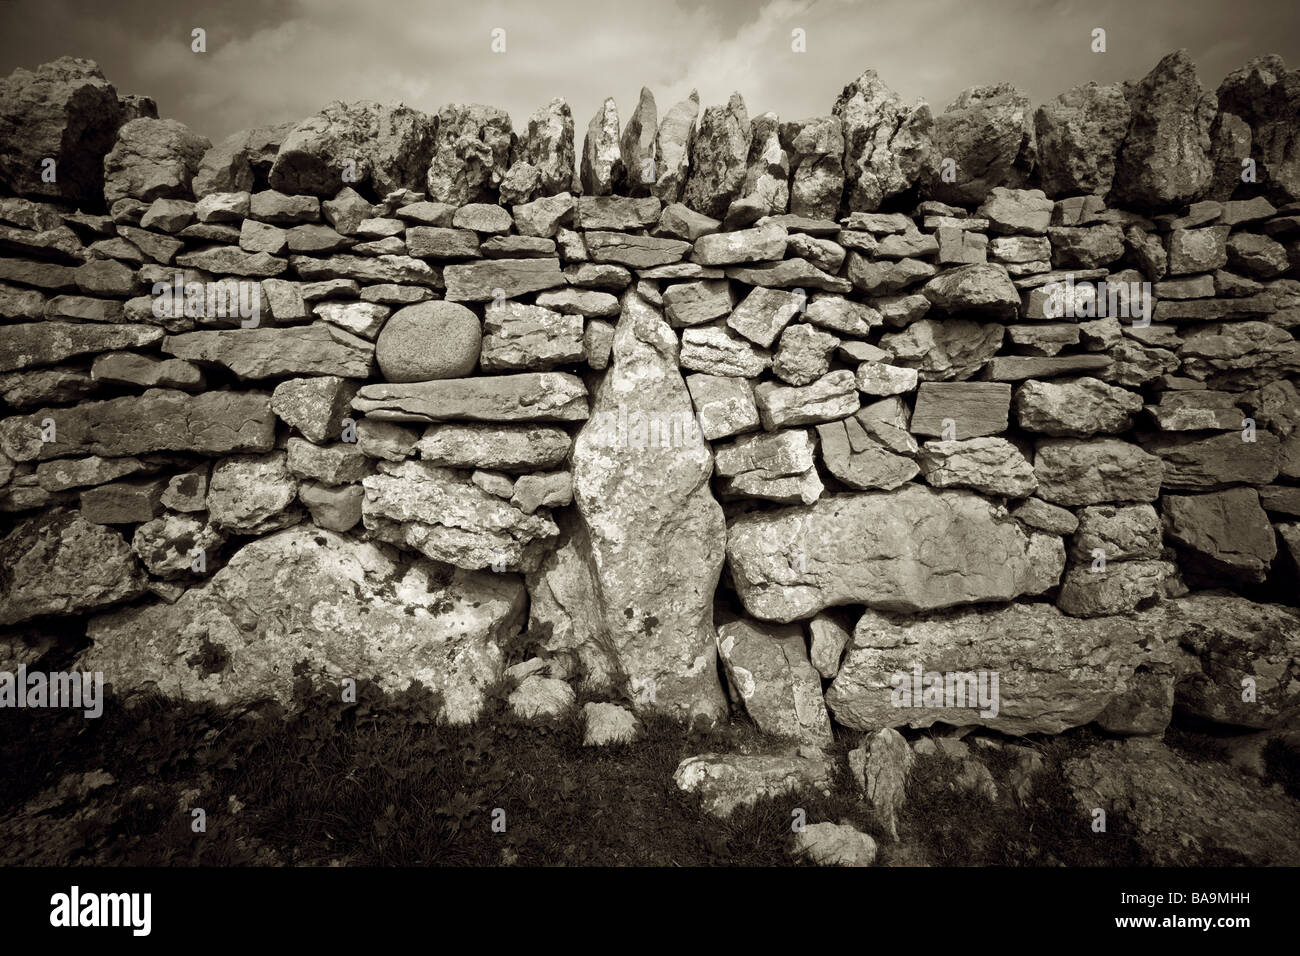 Sepia rapprochée sur mur en pierre sèche à base de lapiez, montrant interlocking grande pierre, Cumbria, Angleterre Banque D'Images